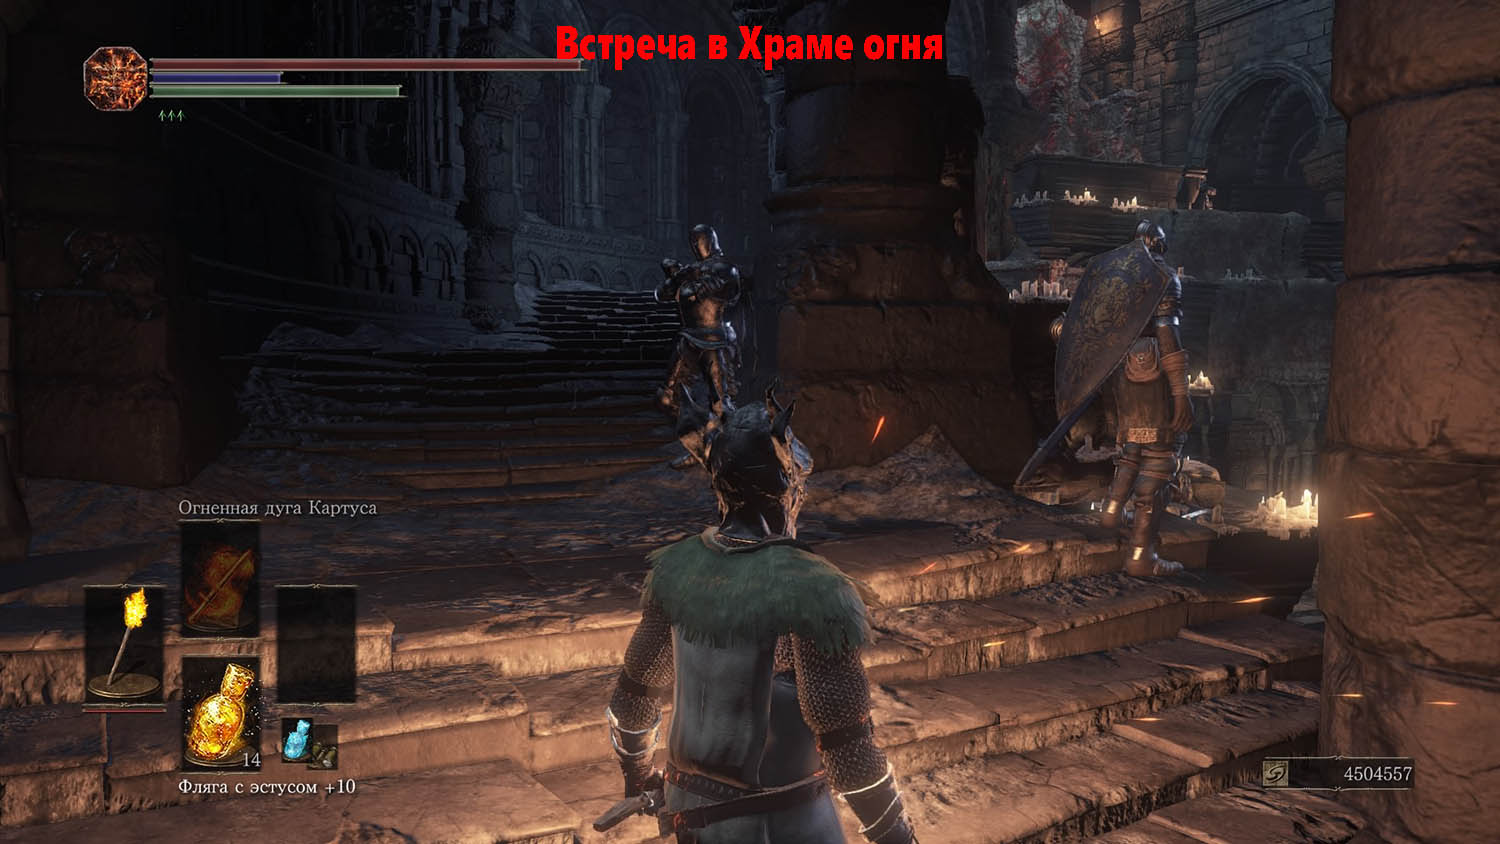 Dark Souls III Встреча с Анри в Храме огня